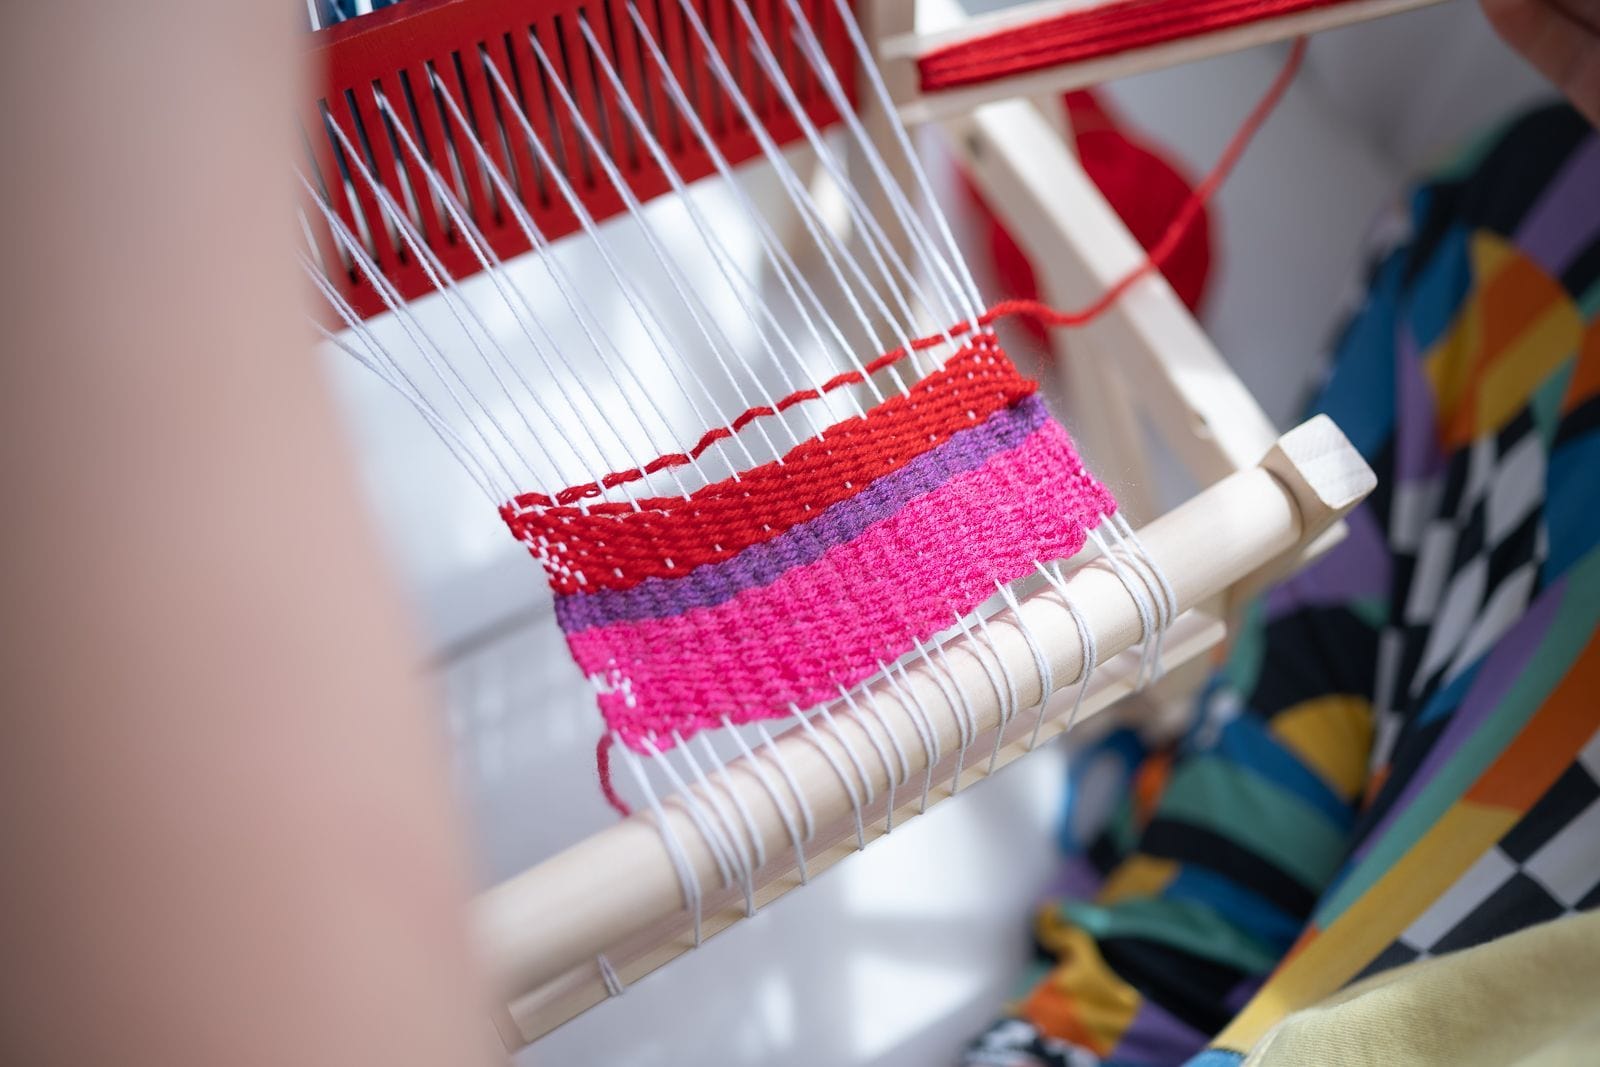 Easy Weaver - A, Kids Weaving Loom